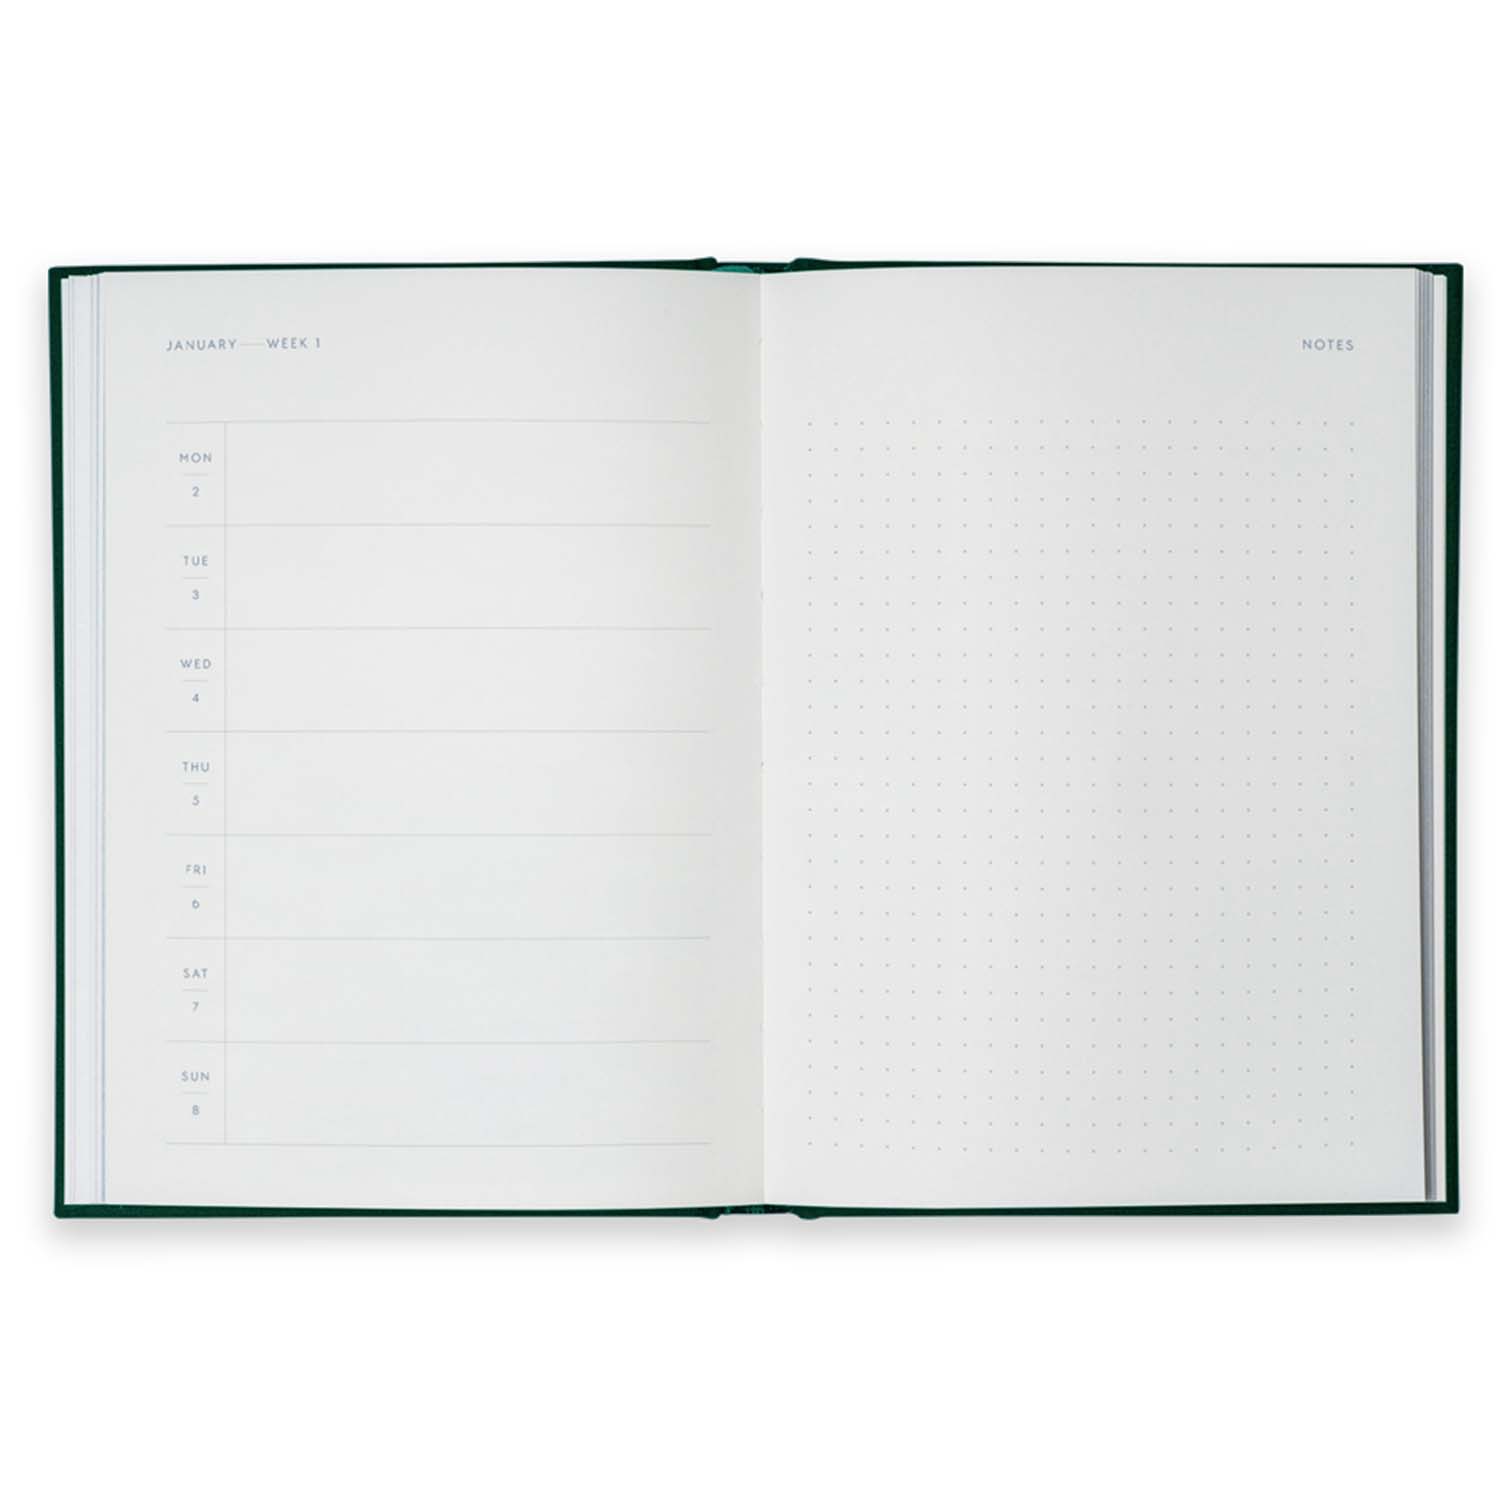 Kartotek Capenhagen - Notebook Calendar 2023 - NC-0006 - Inside pages 3